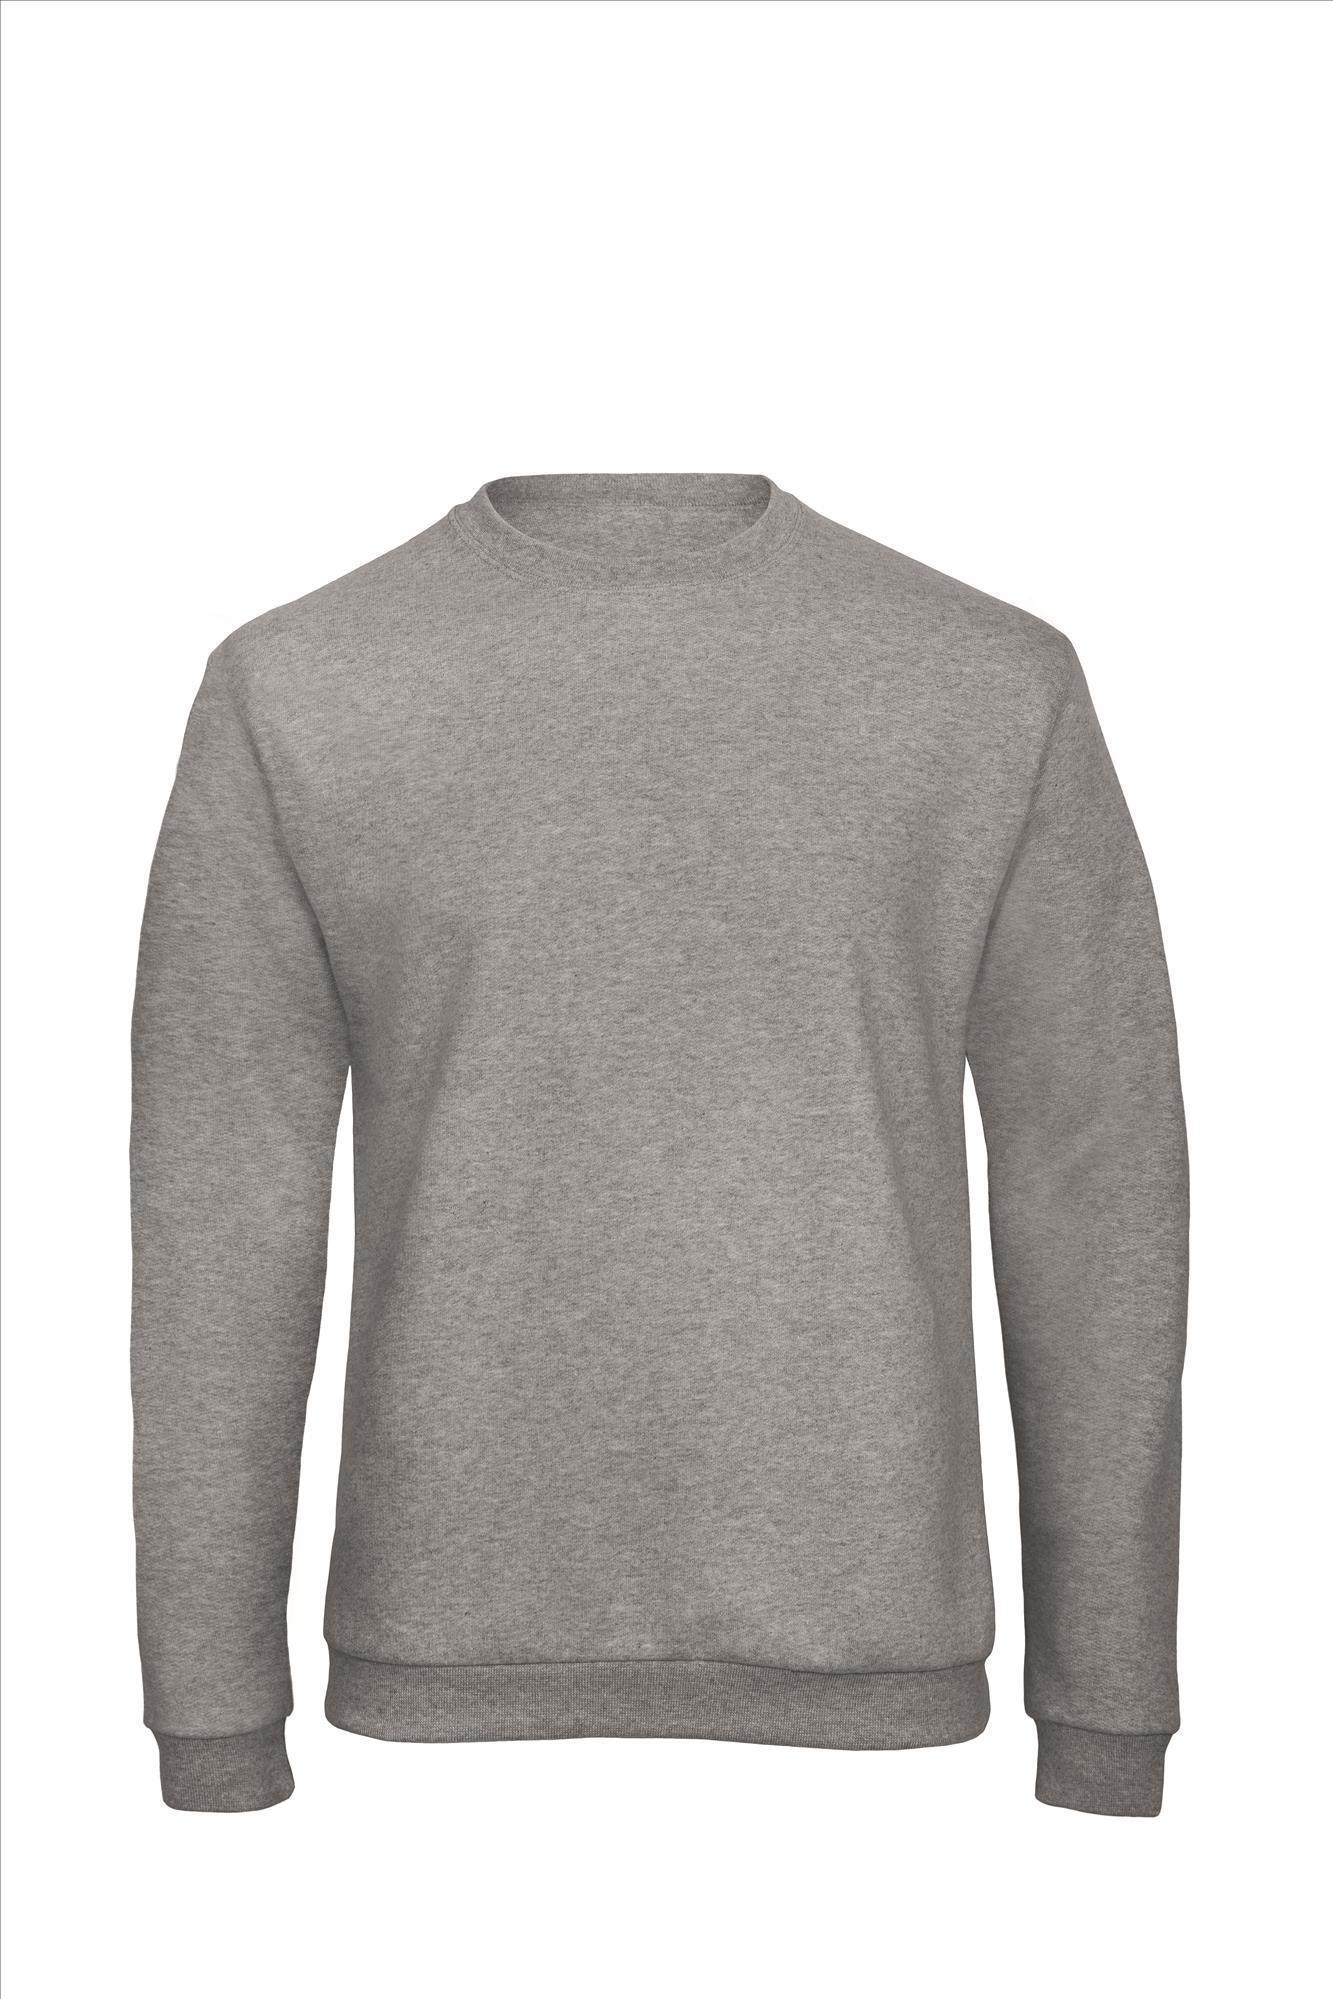 Sweater voor mannen budget grijs